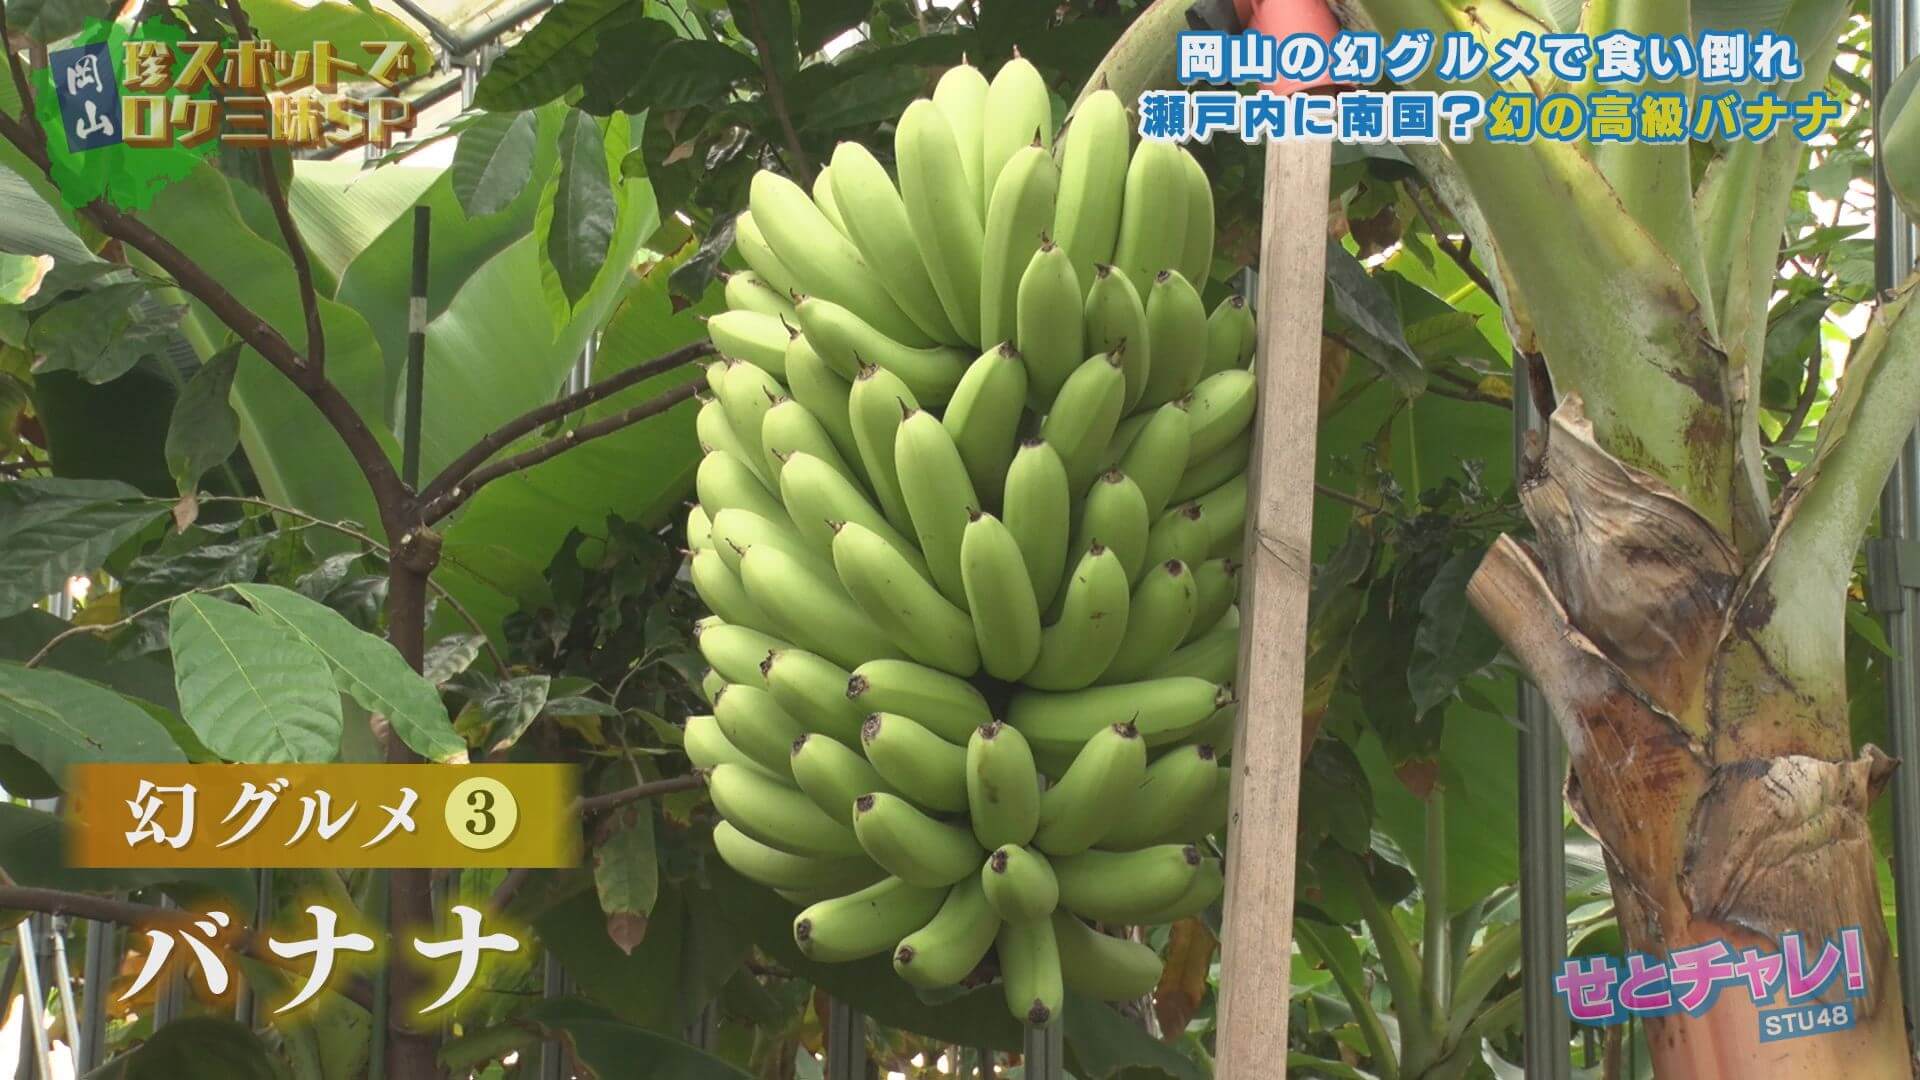 岡山幻のグルメ③「もんげーバナナ」